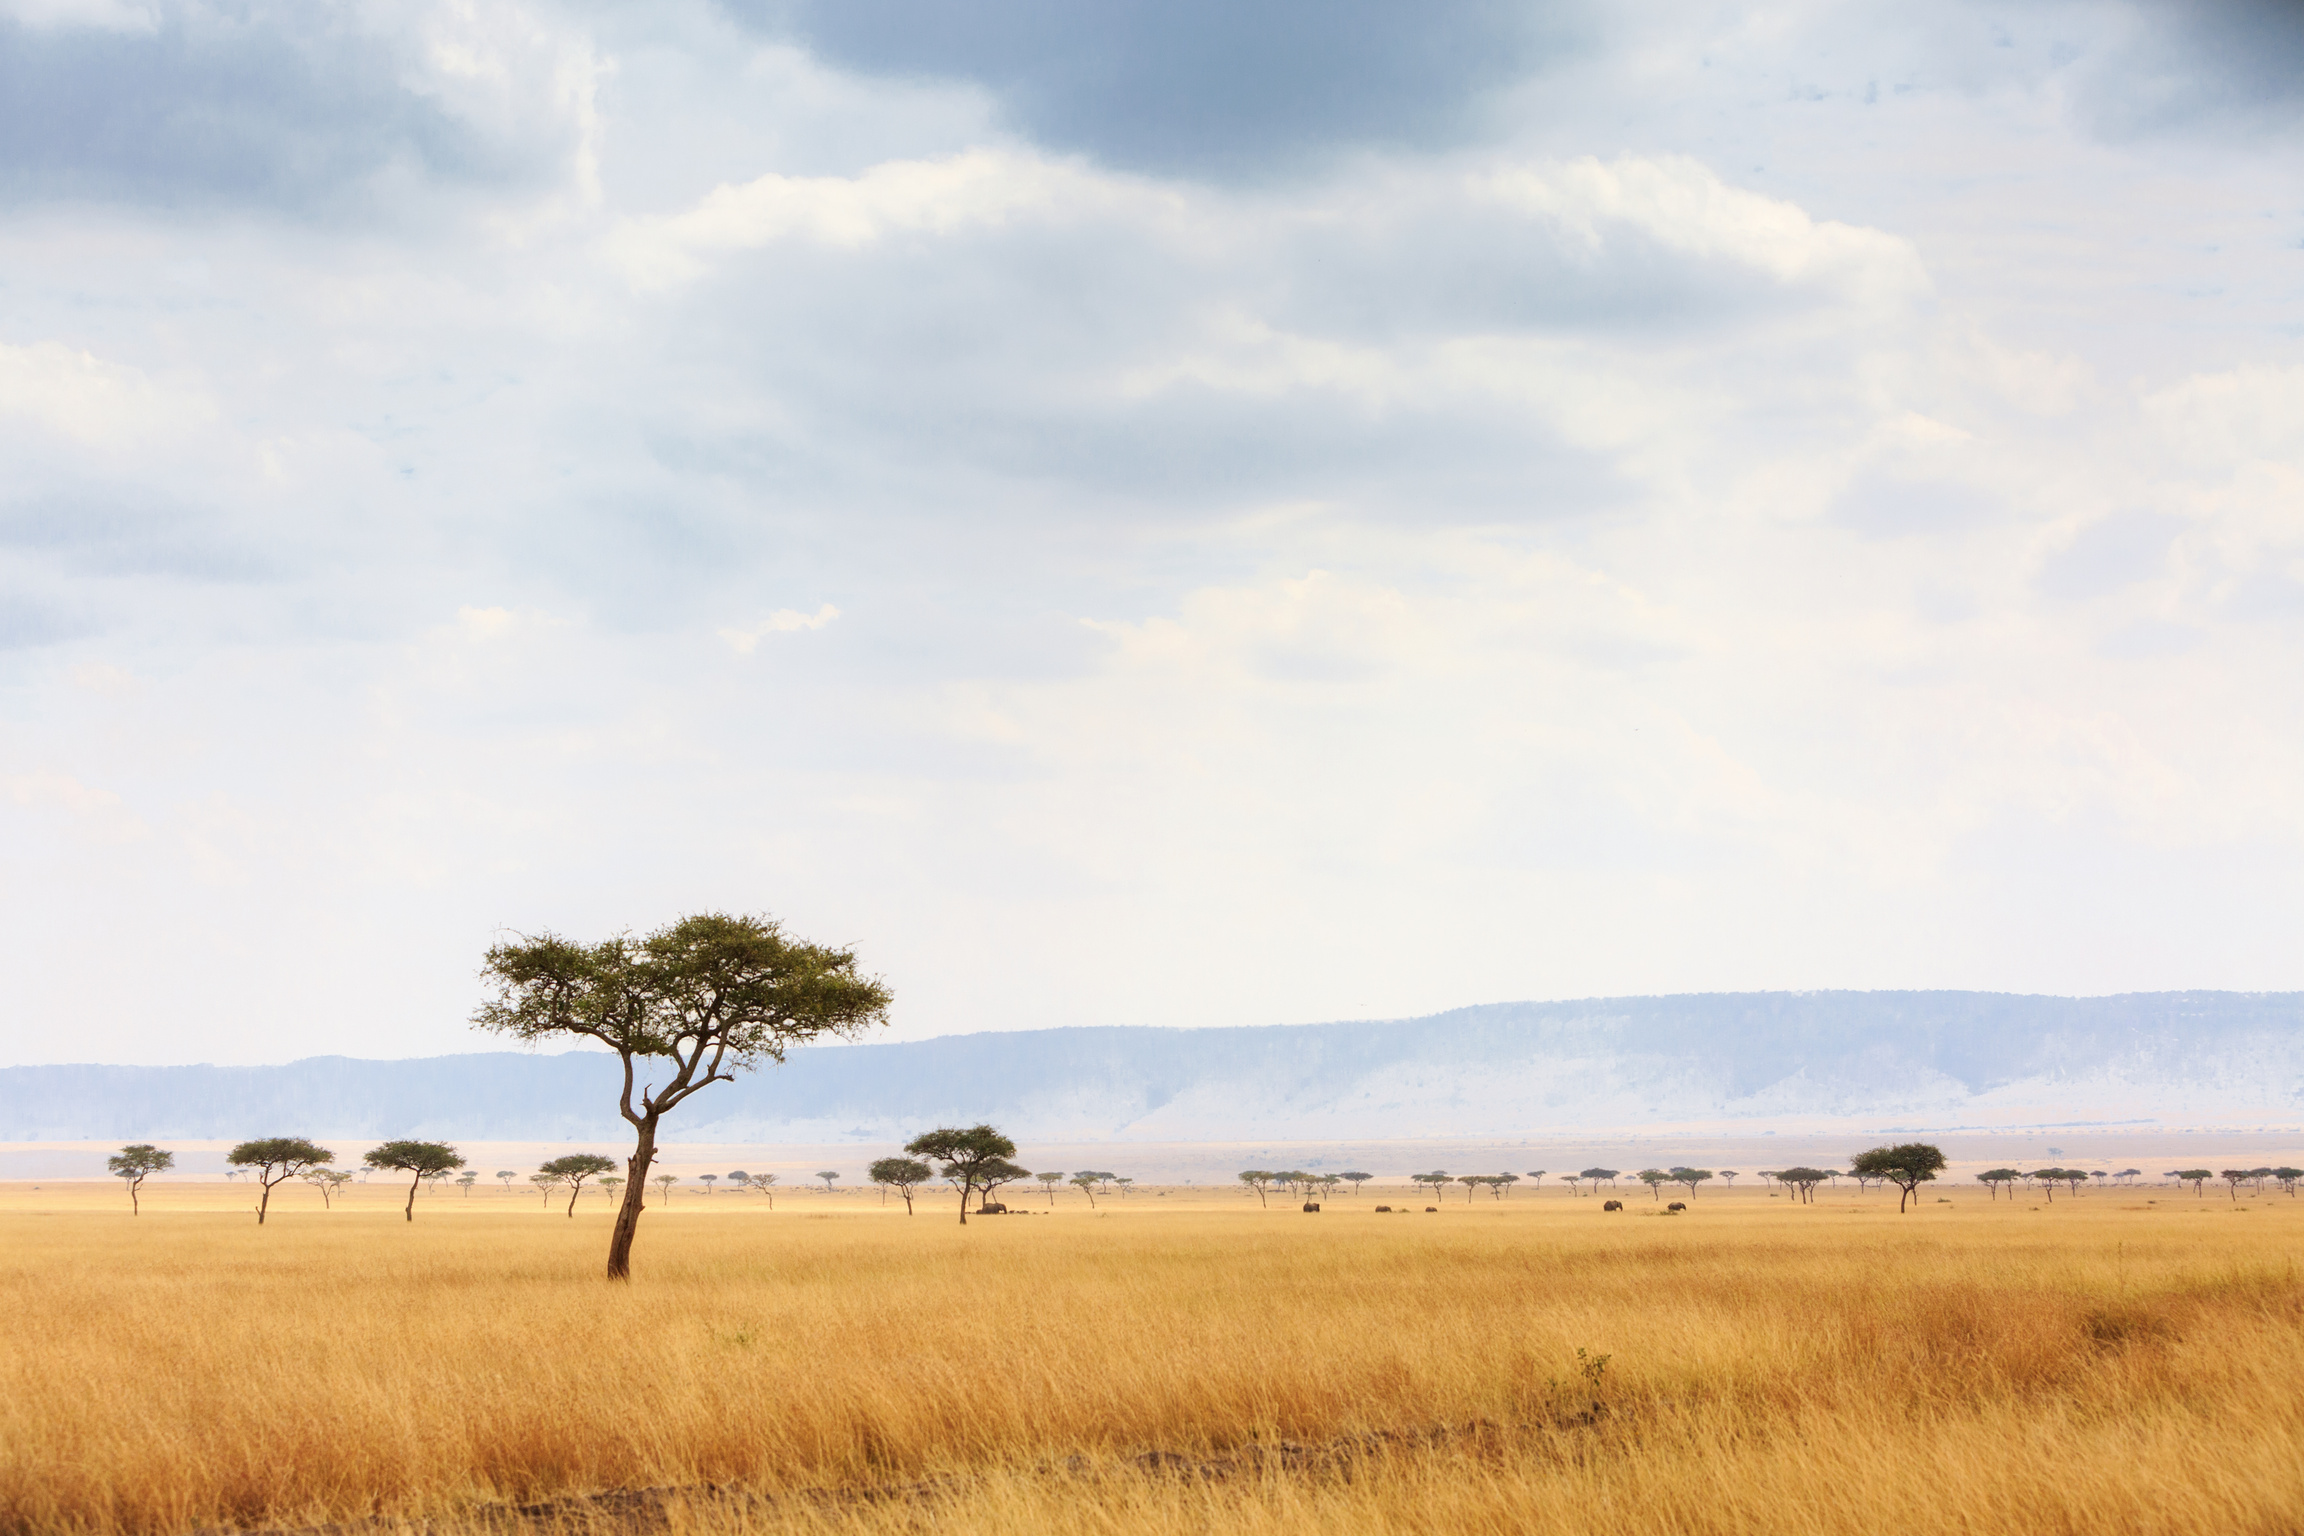 Kenya Open Field with Elephants  